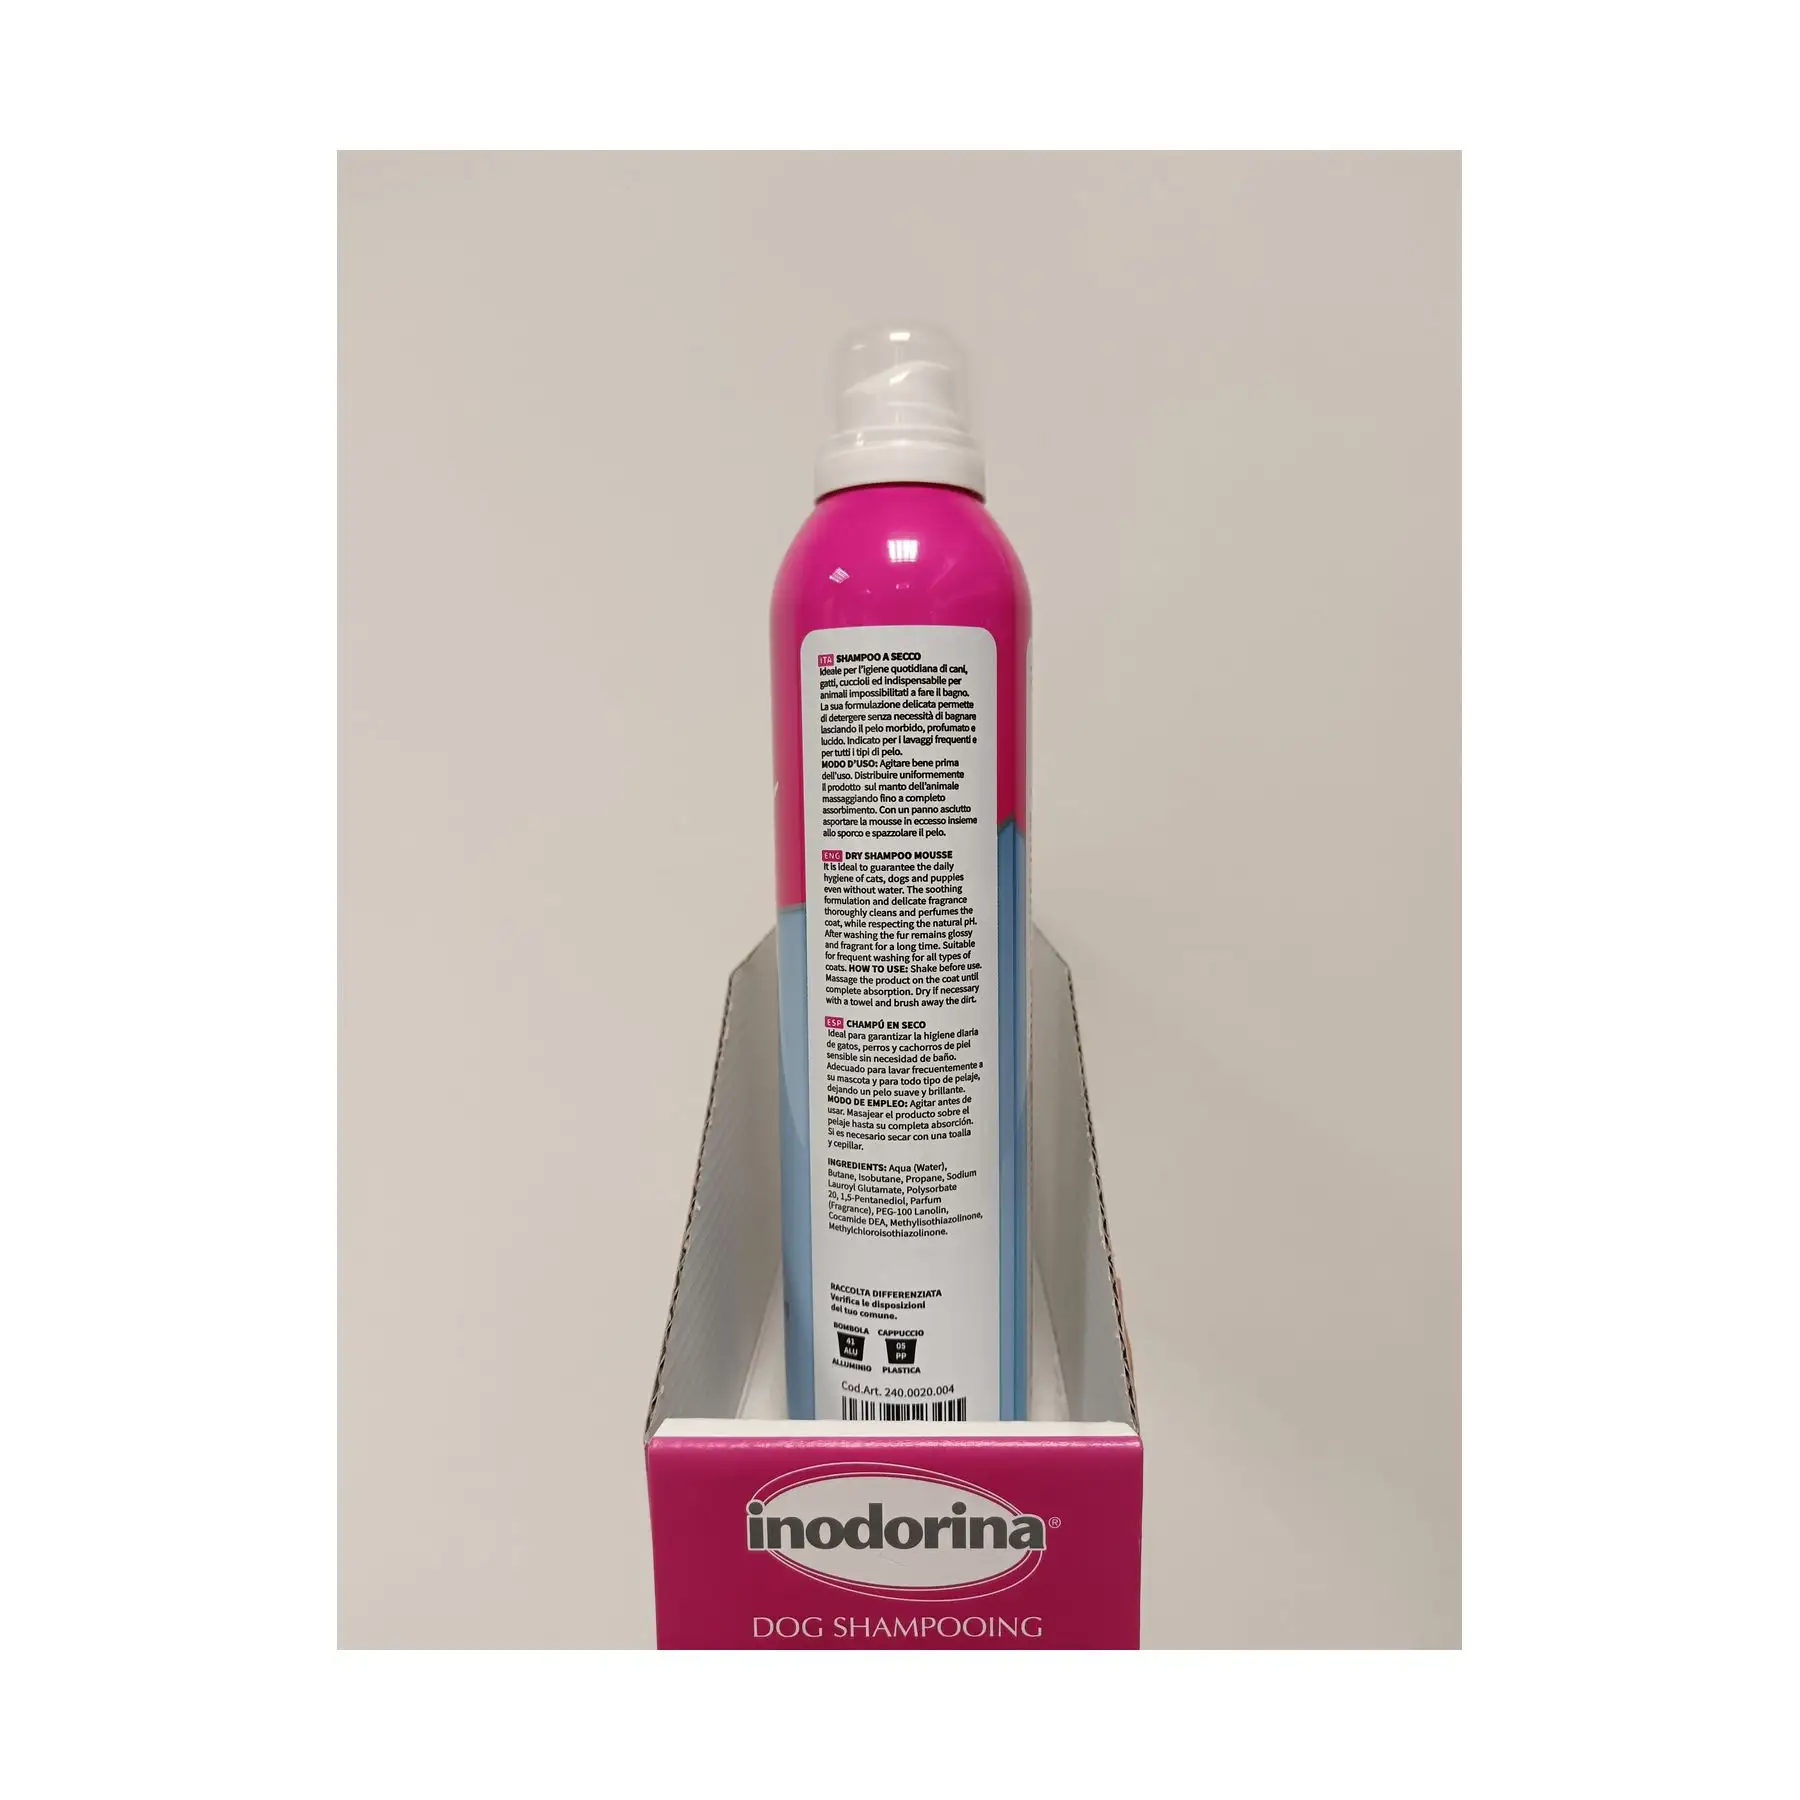 Shampoo di talco Premium con Mousse-Formula a secco per una pulizia rapida da 300 ml, ideale per una freschezza in movimento